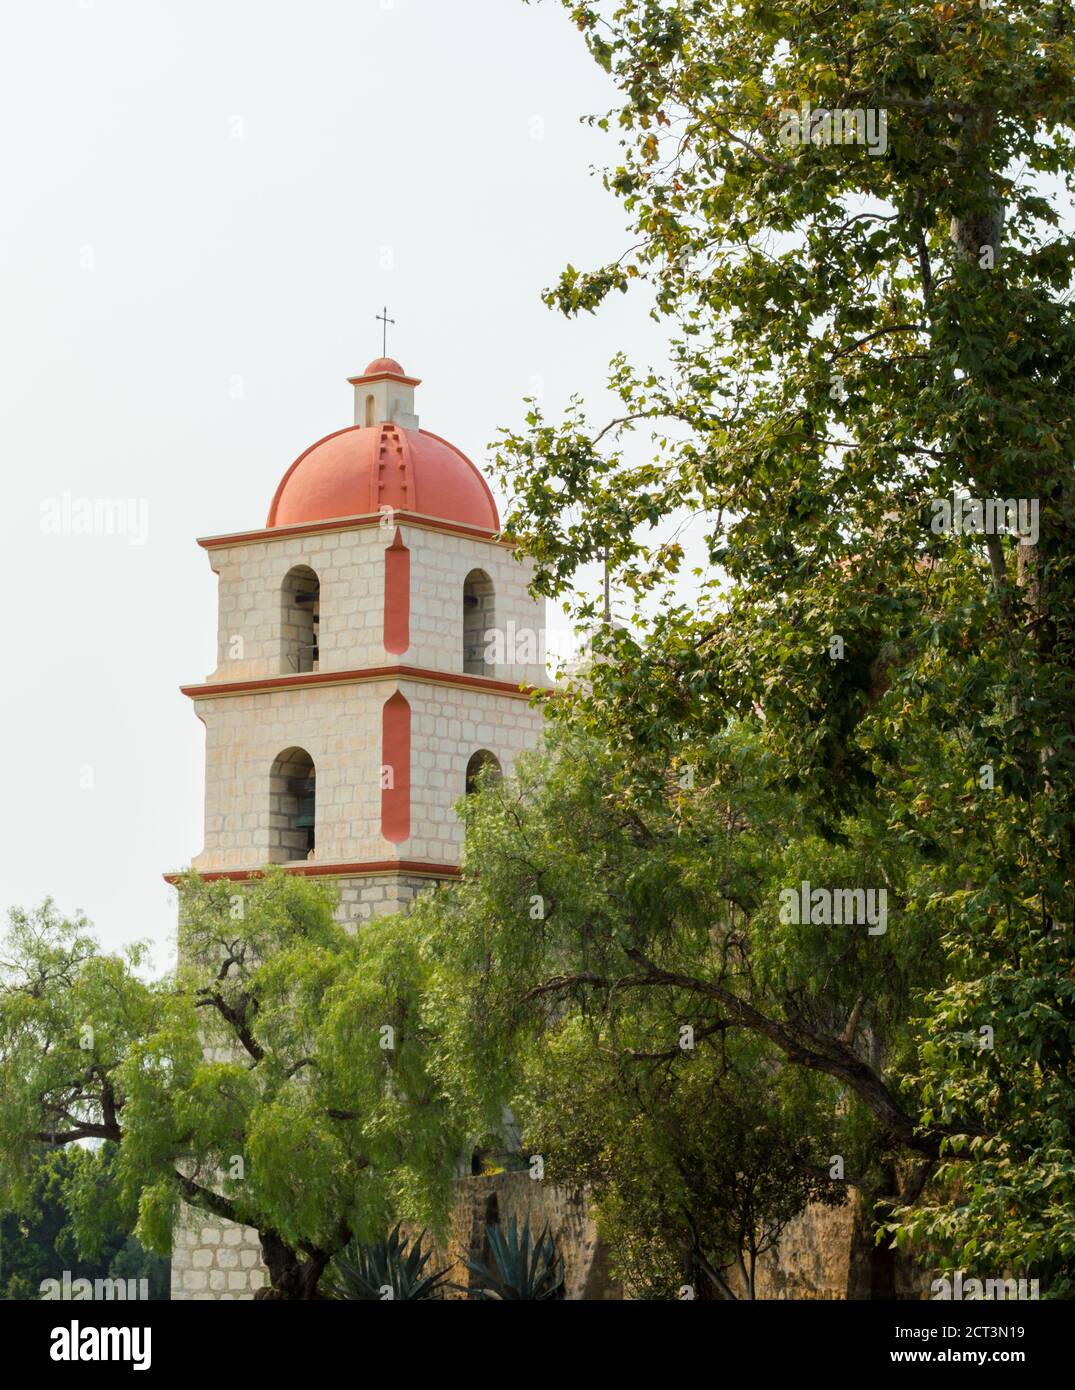 Clocher néoclassique de la mission historique de Santa Barbara au milieu arbres luxuriants sous un soleil brumeux avec espace de copie Banque D'Images